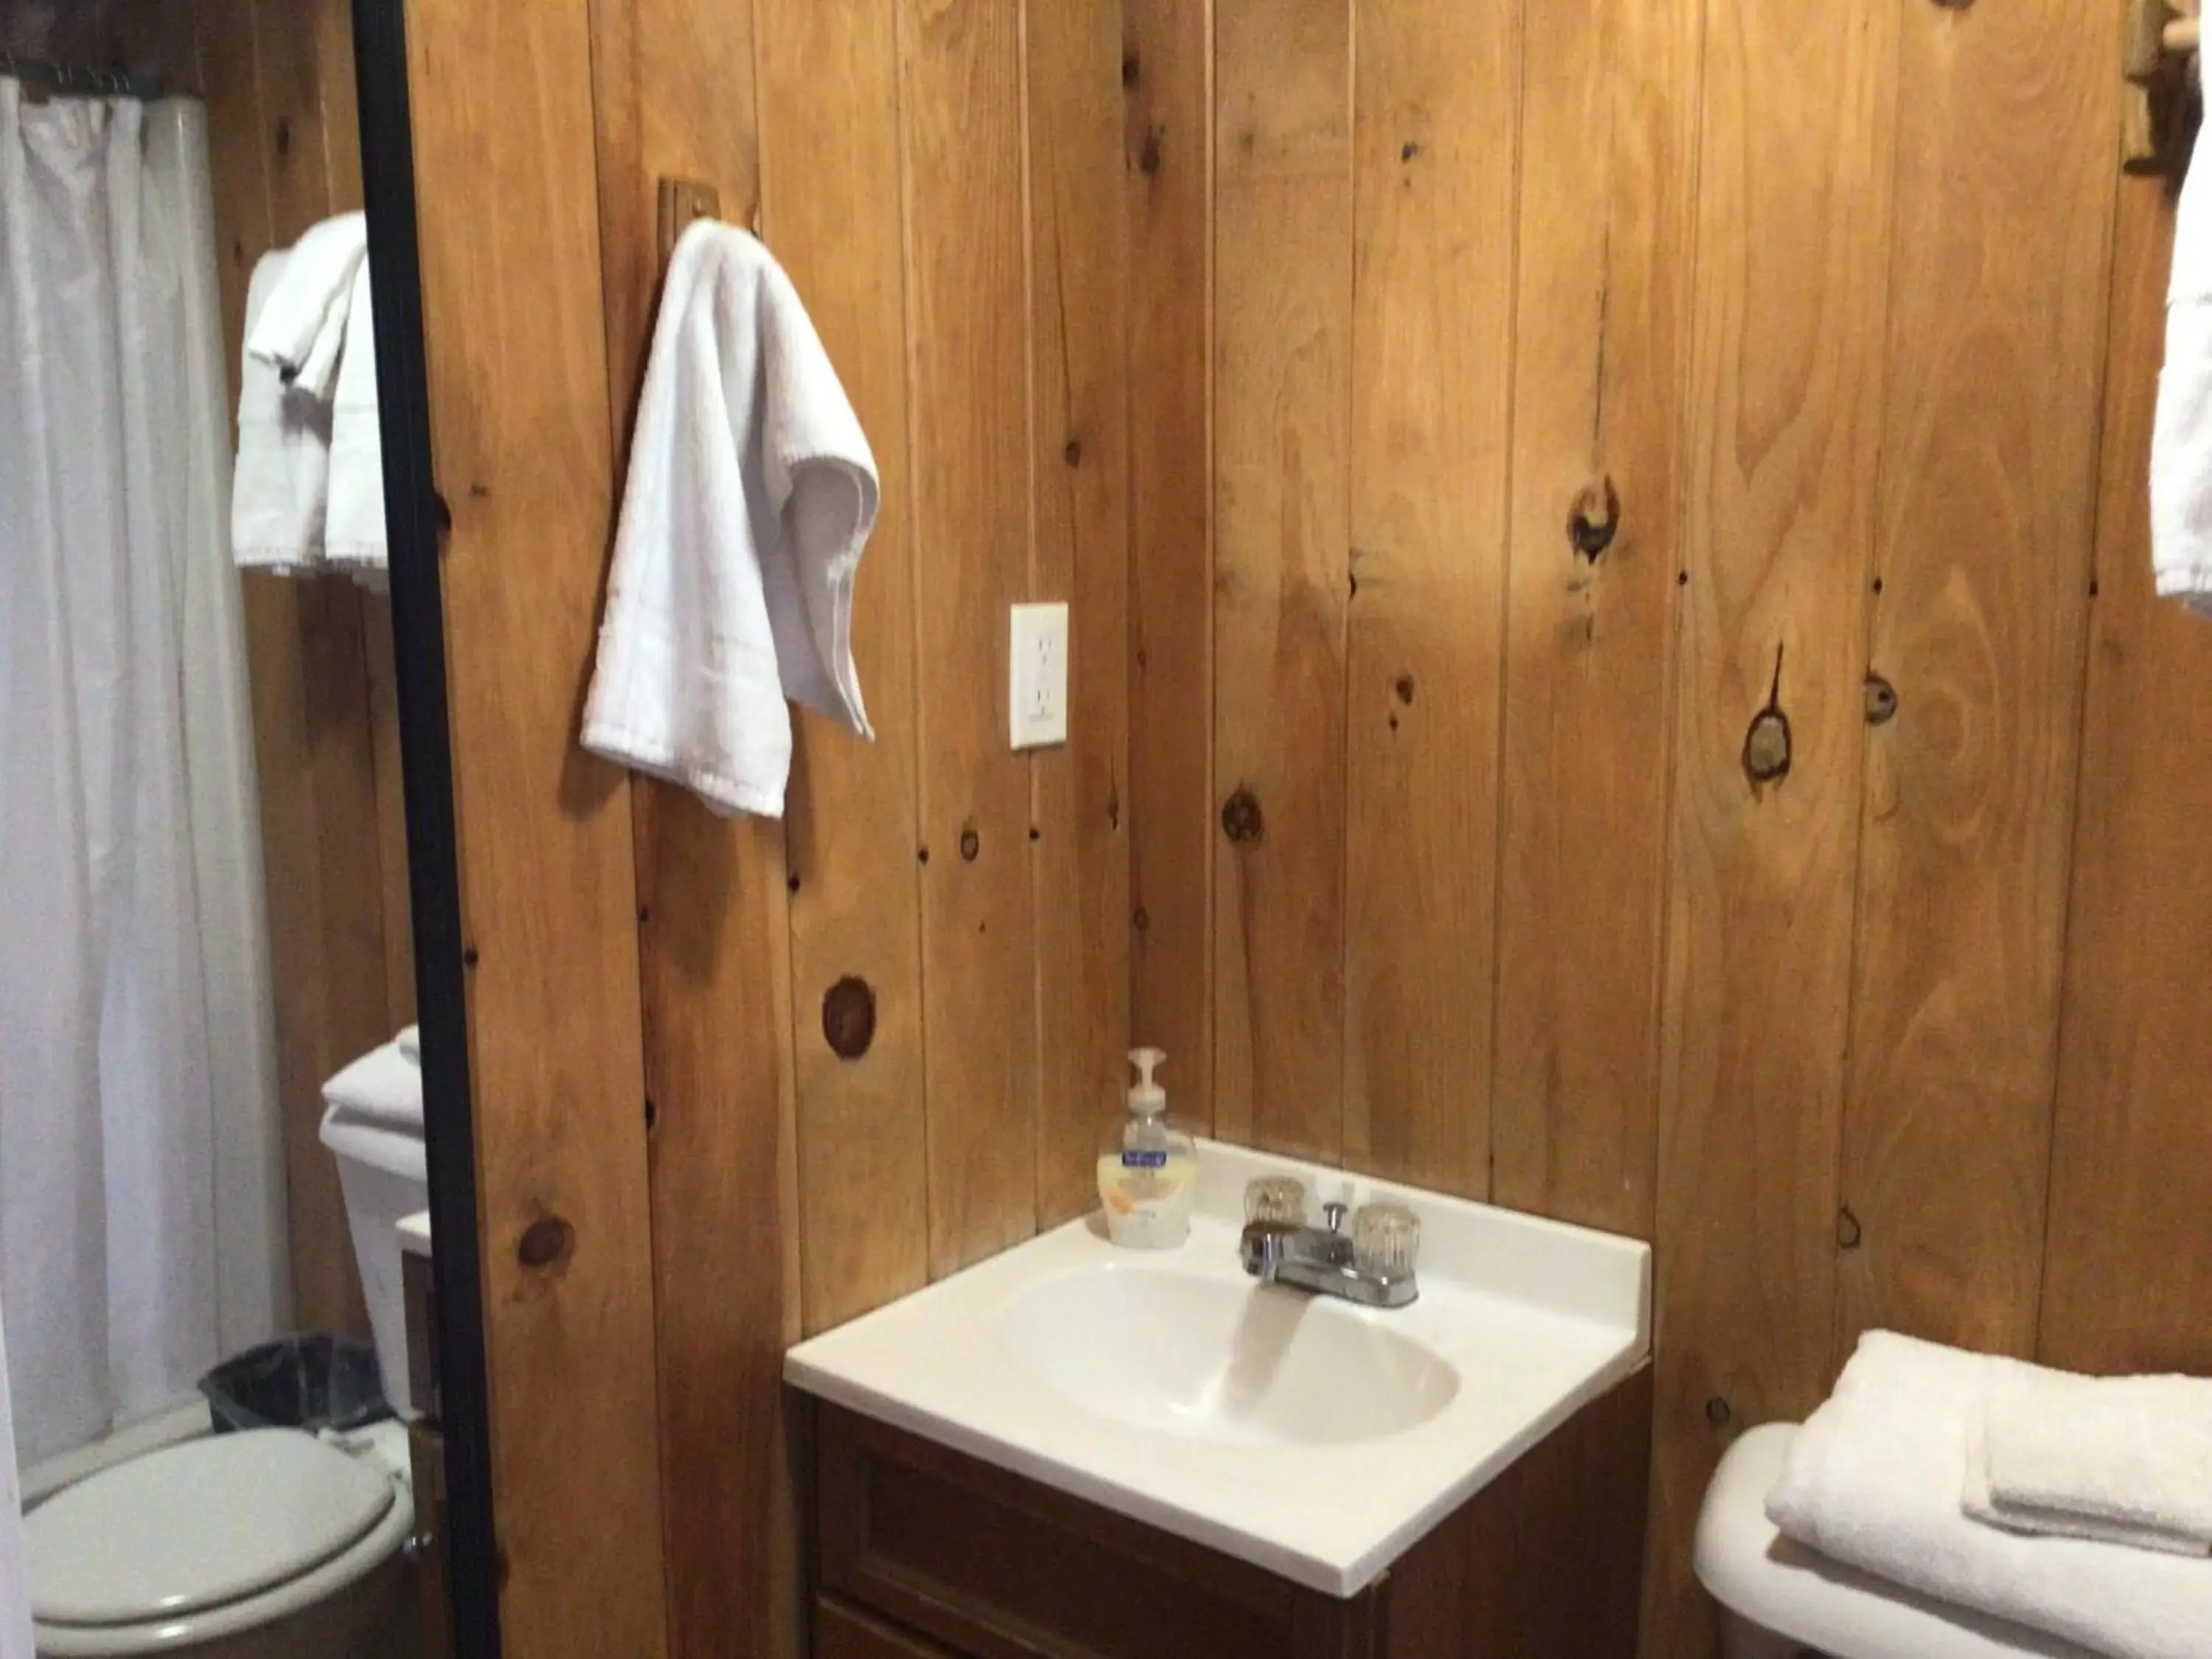 Bathroom in Kozy Haven Log Cabin Rentals